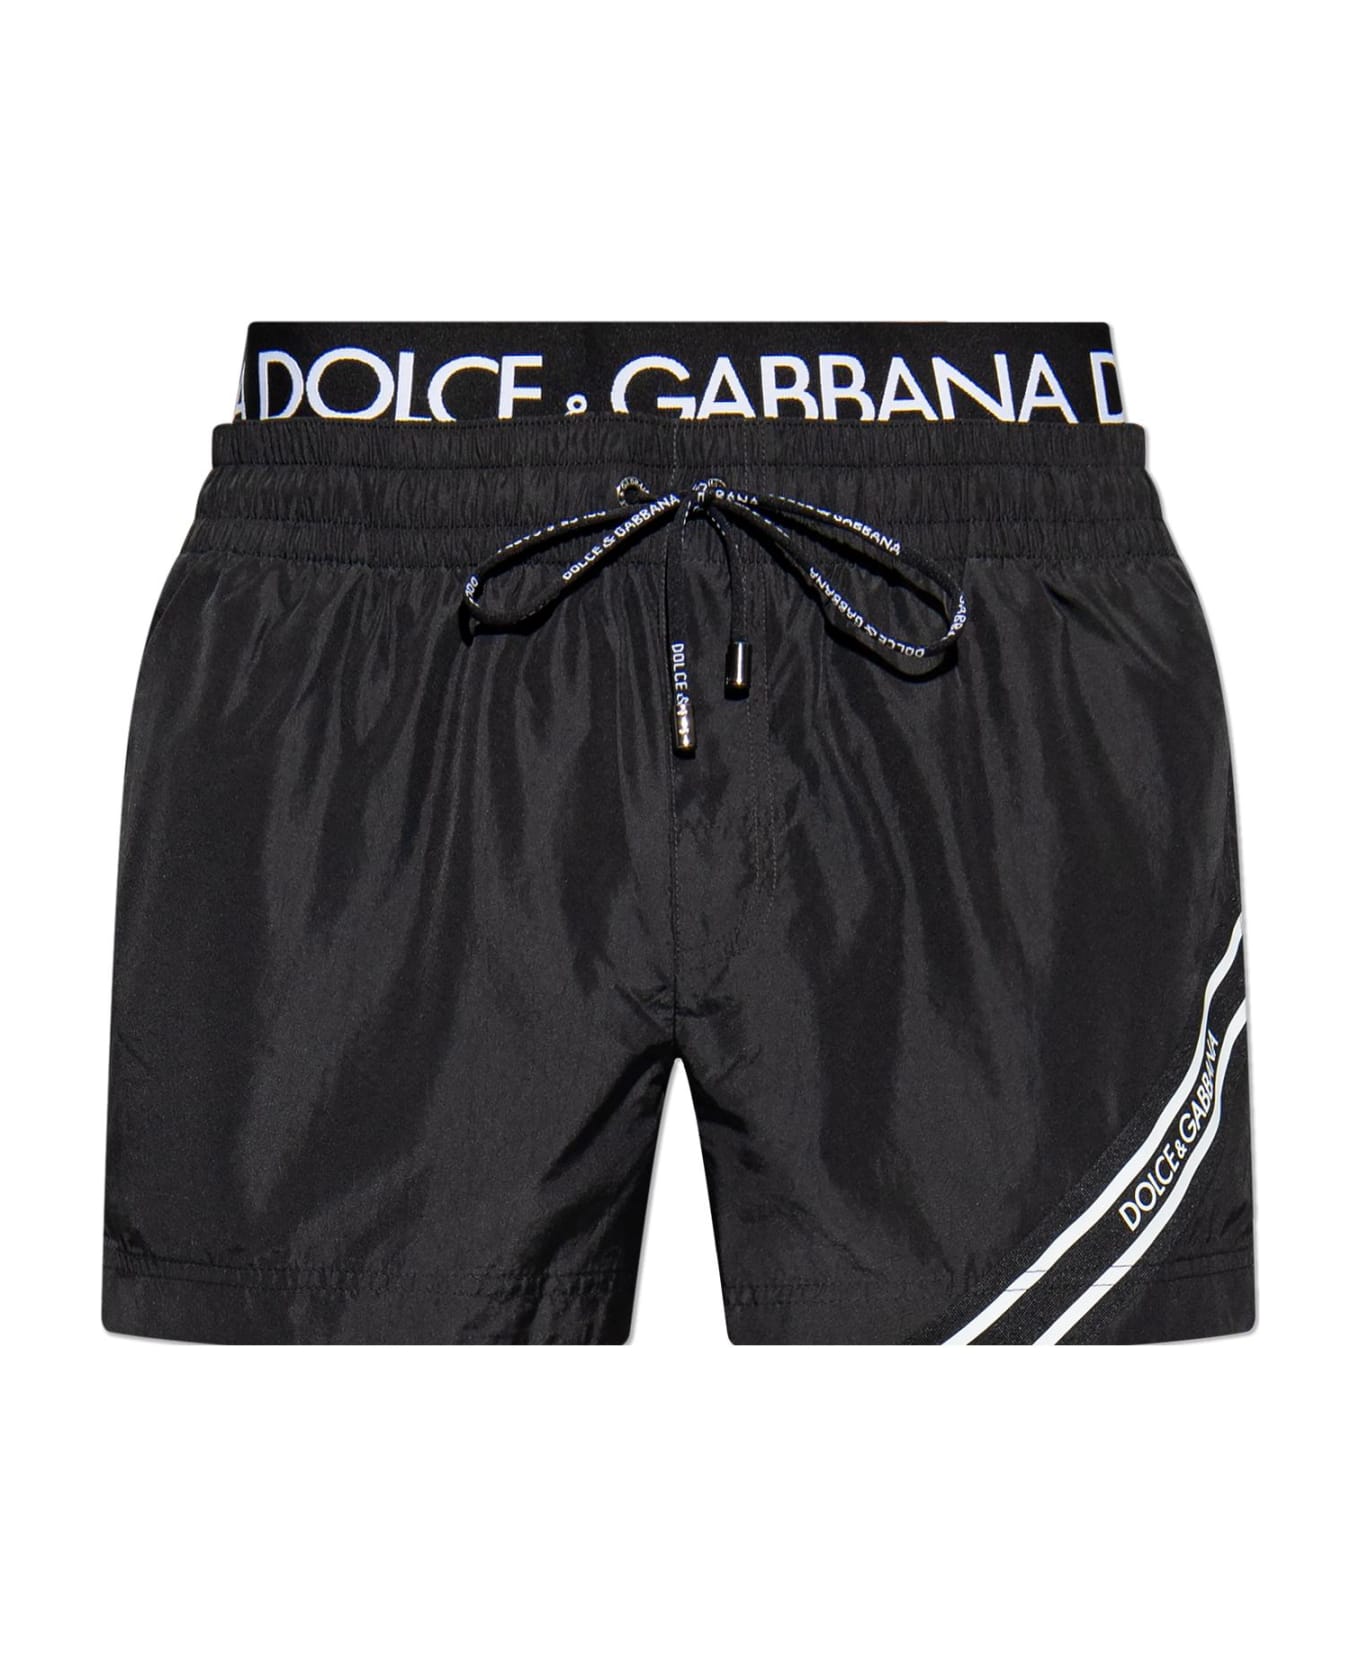 Dolce & Gabbana Swim Shorts